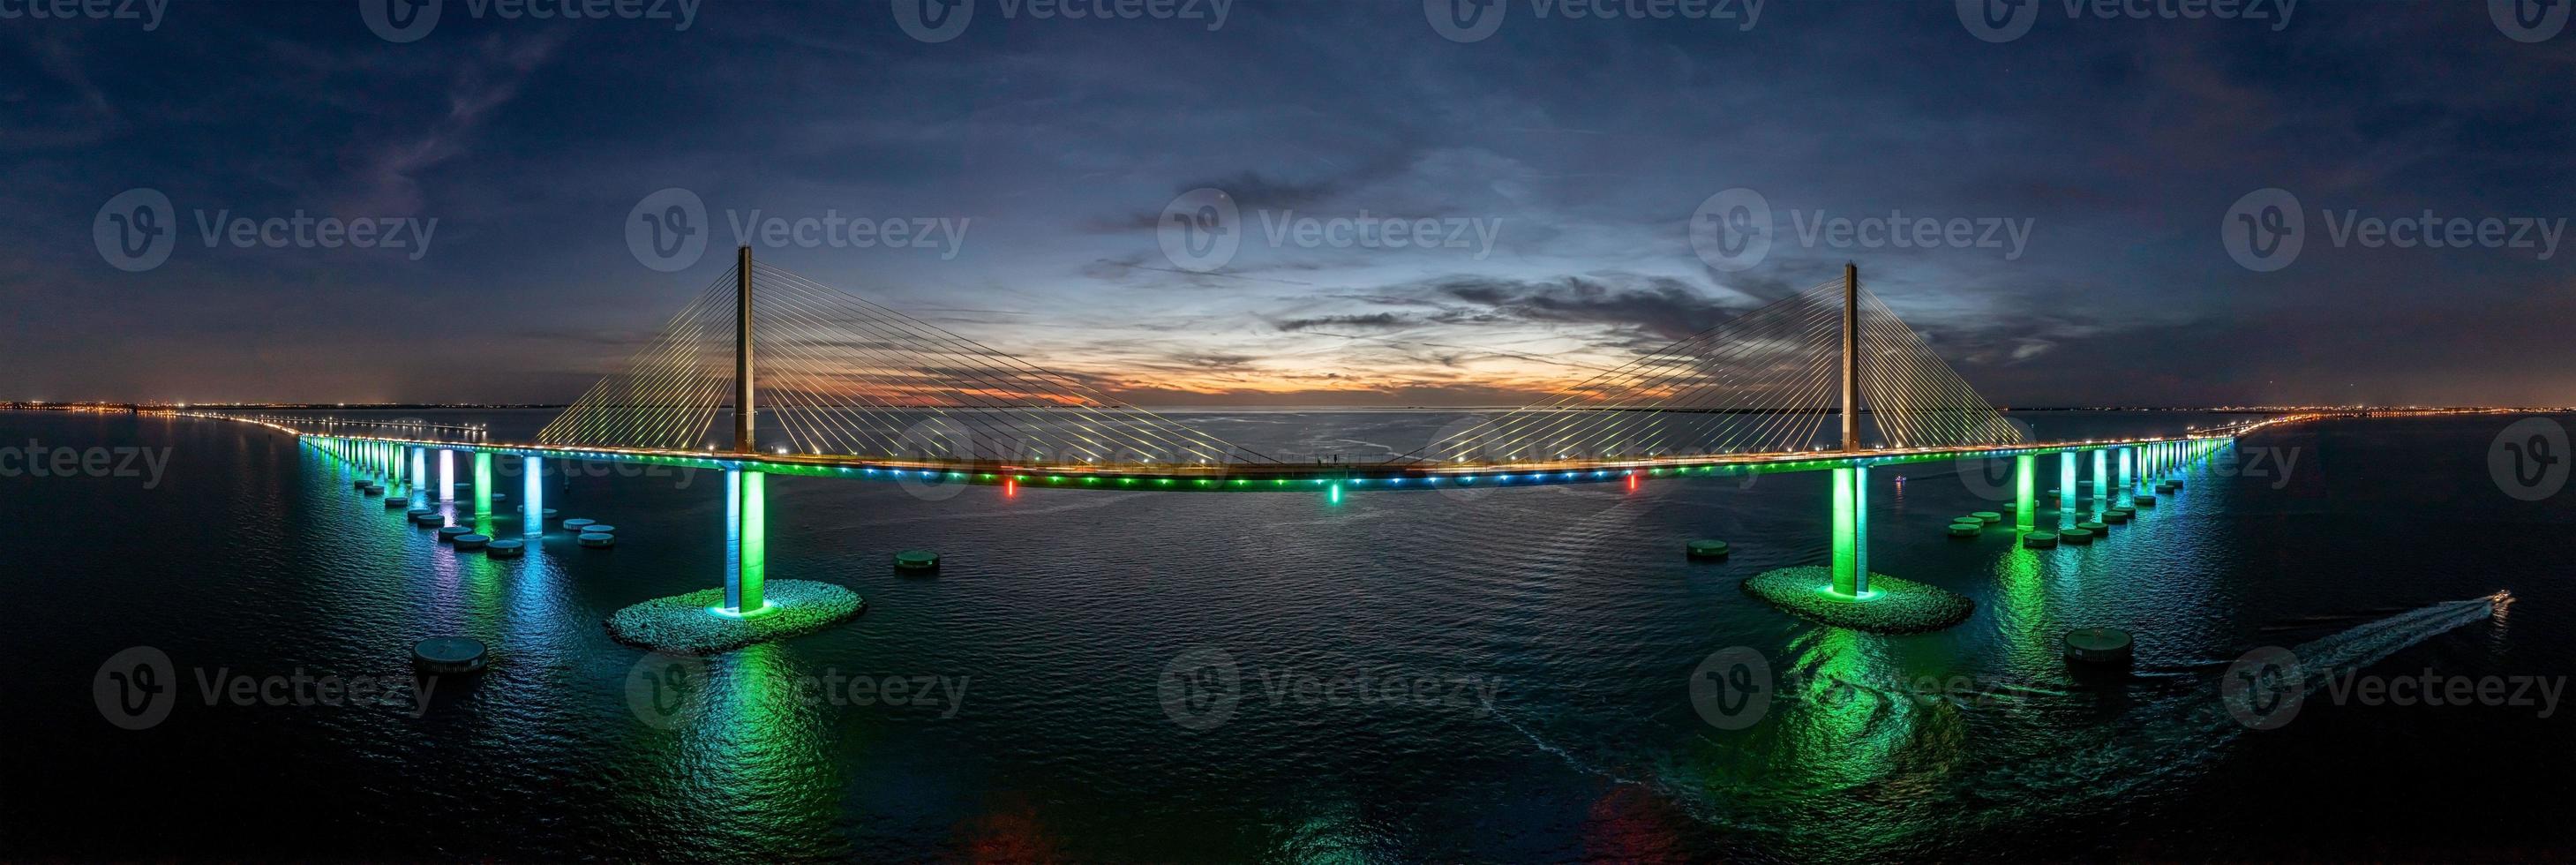 dar panorama van zonneschijn skyway brug over- tampa baai foto